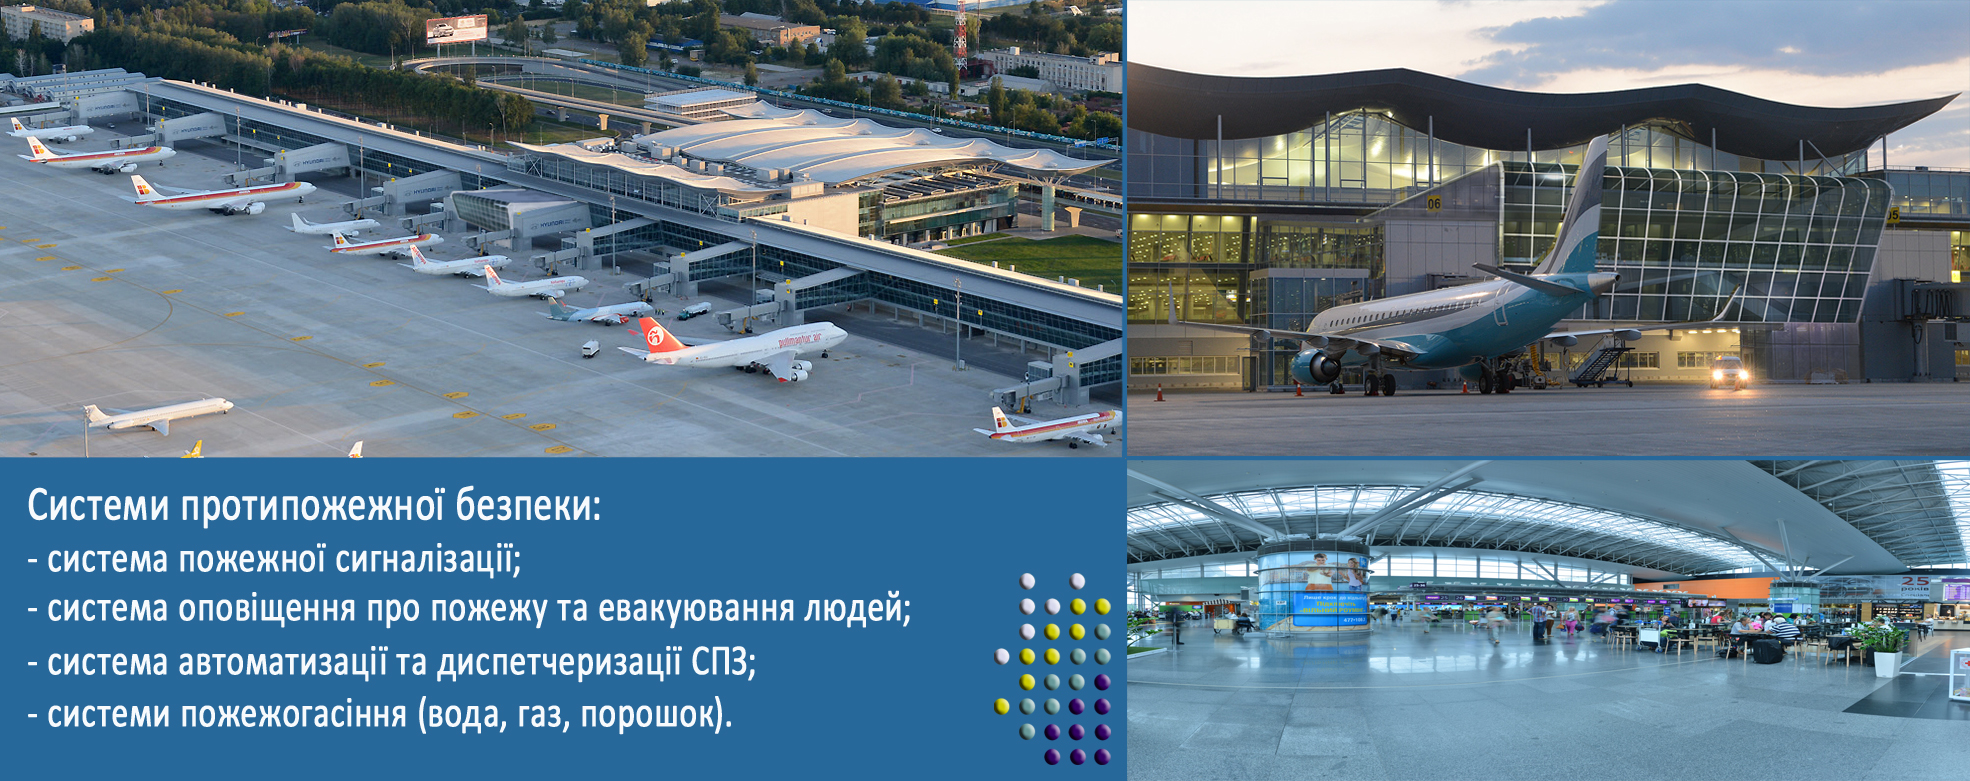 Пасажирський термінал 'D' ДП МА 'Бориспіль'